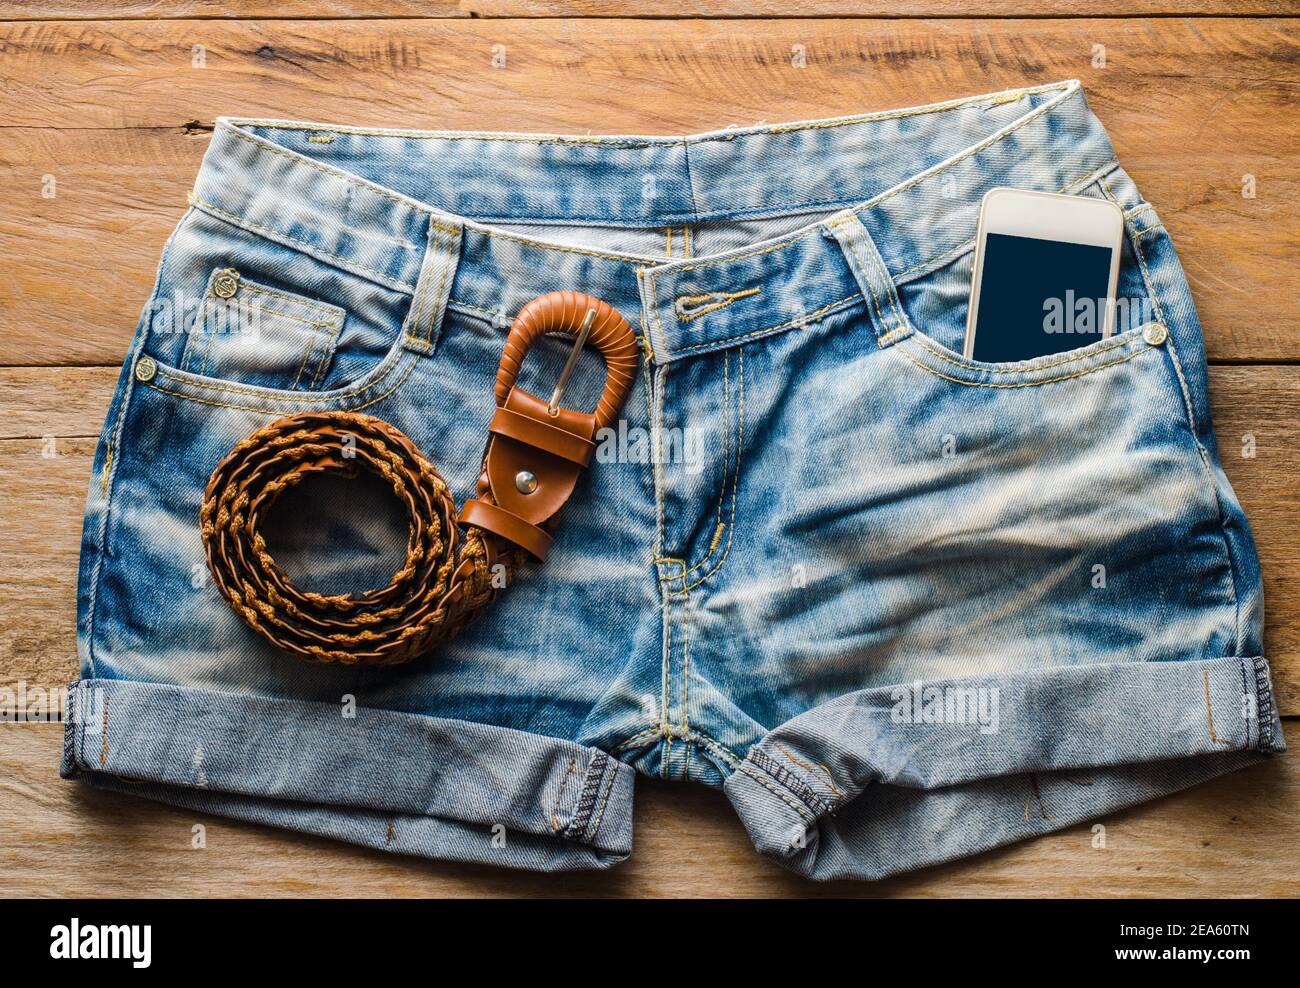 Pantaloncini jeans e smartphone sul pavimento in legno. Foto Stock